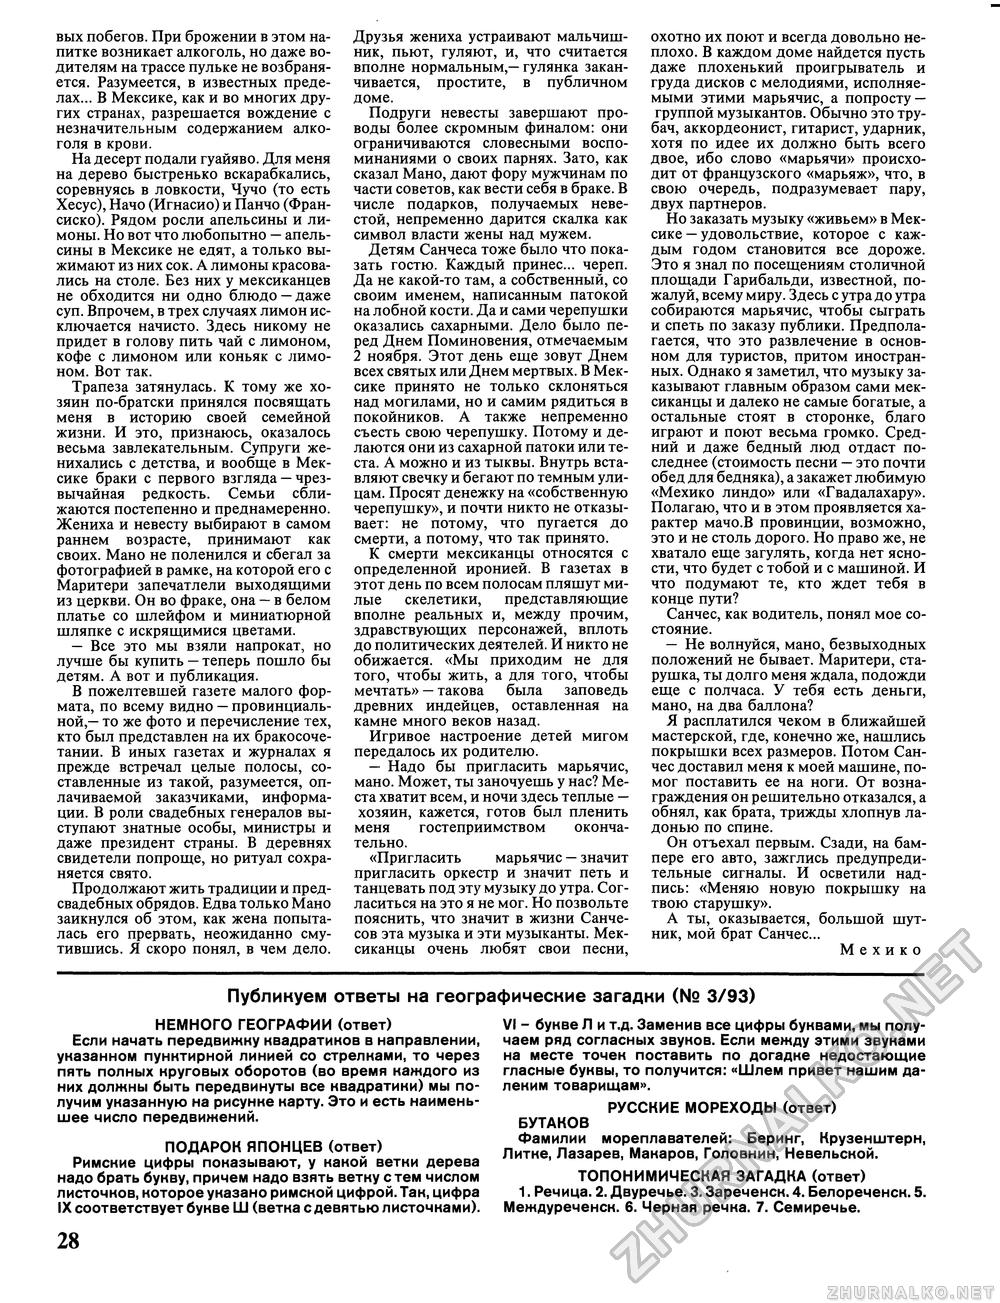 Вокруг света 1993-04, страница 30